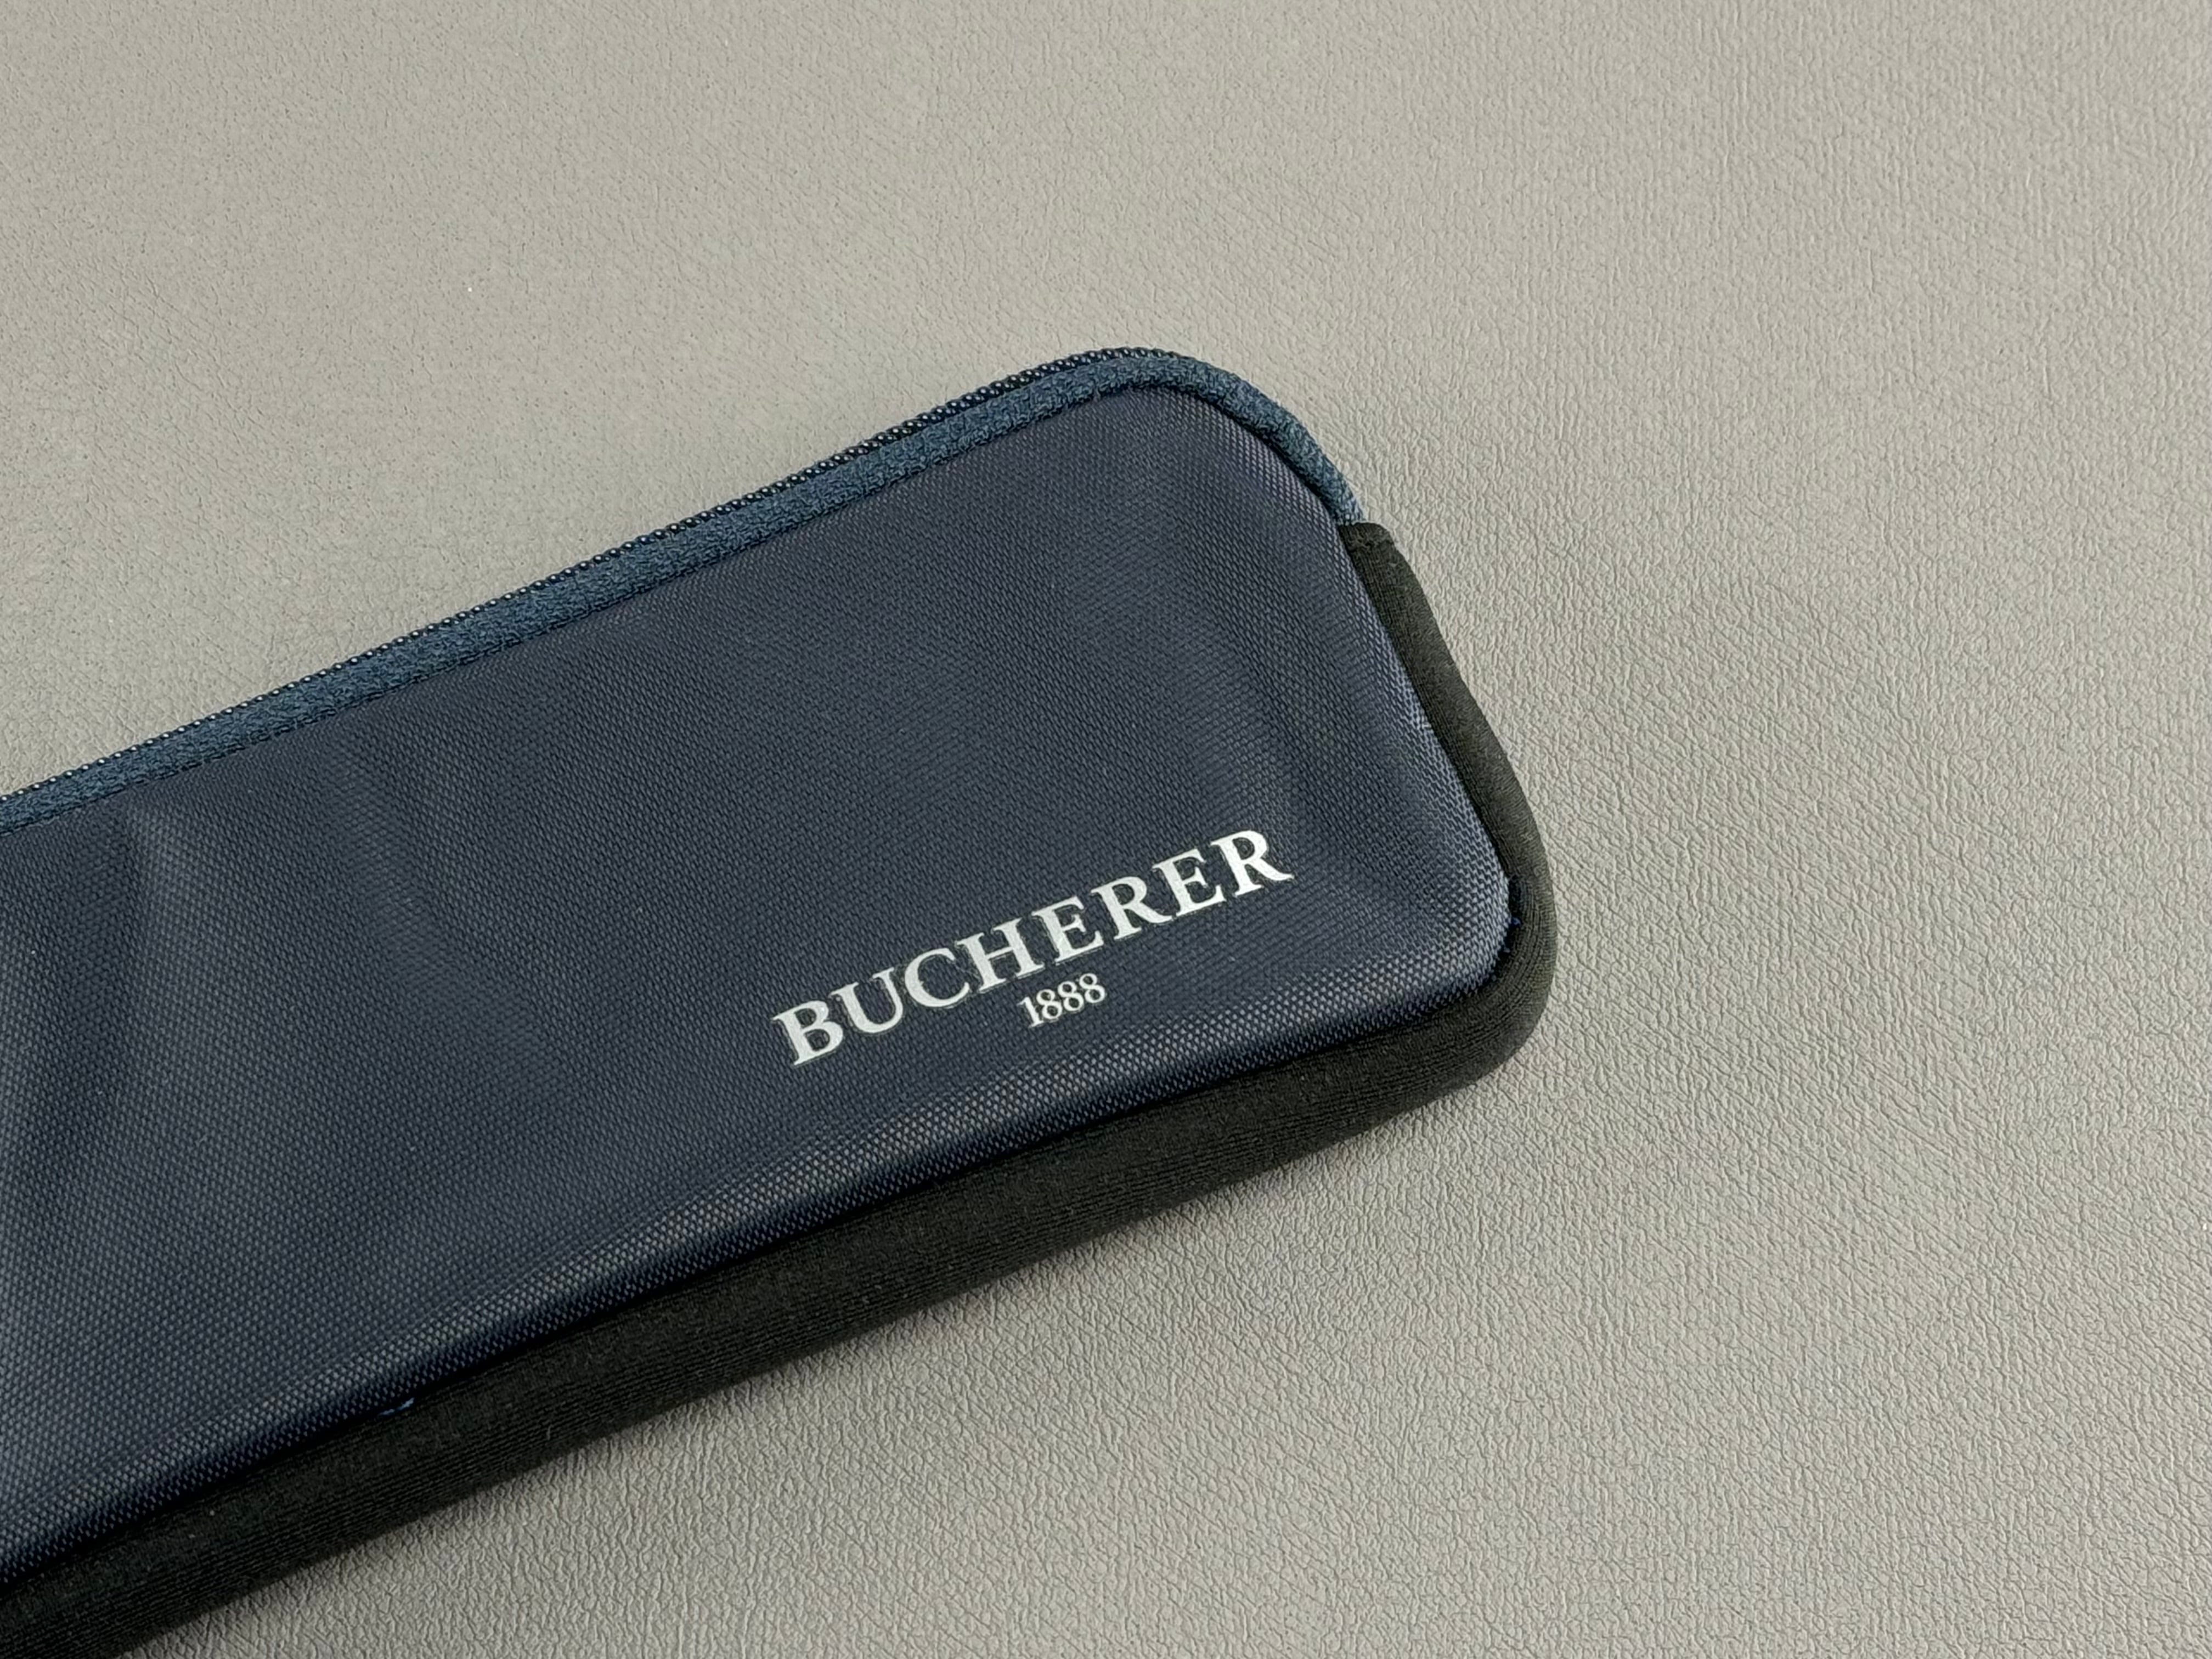 Bucherer 1888 Watch Case Blue